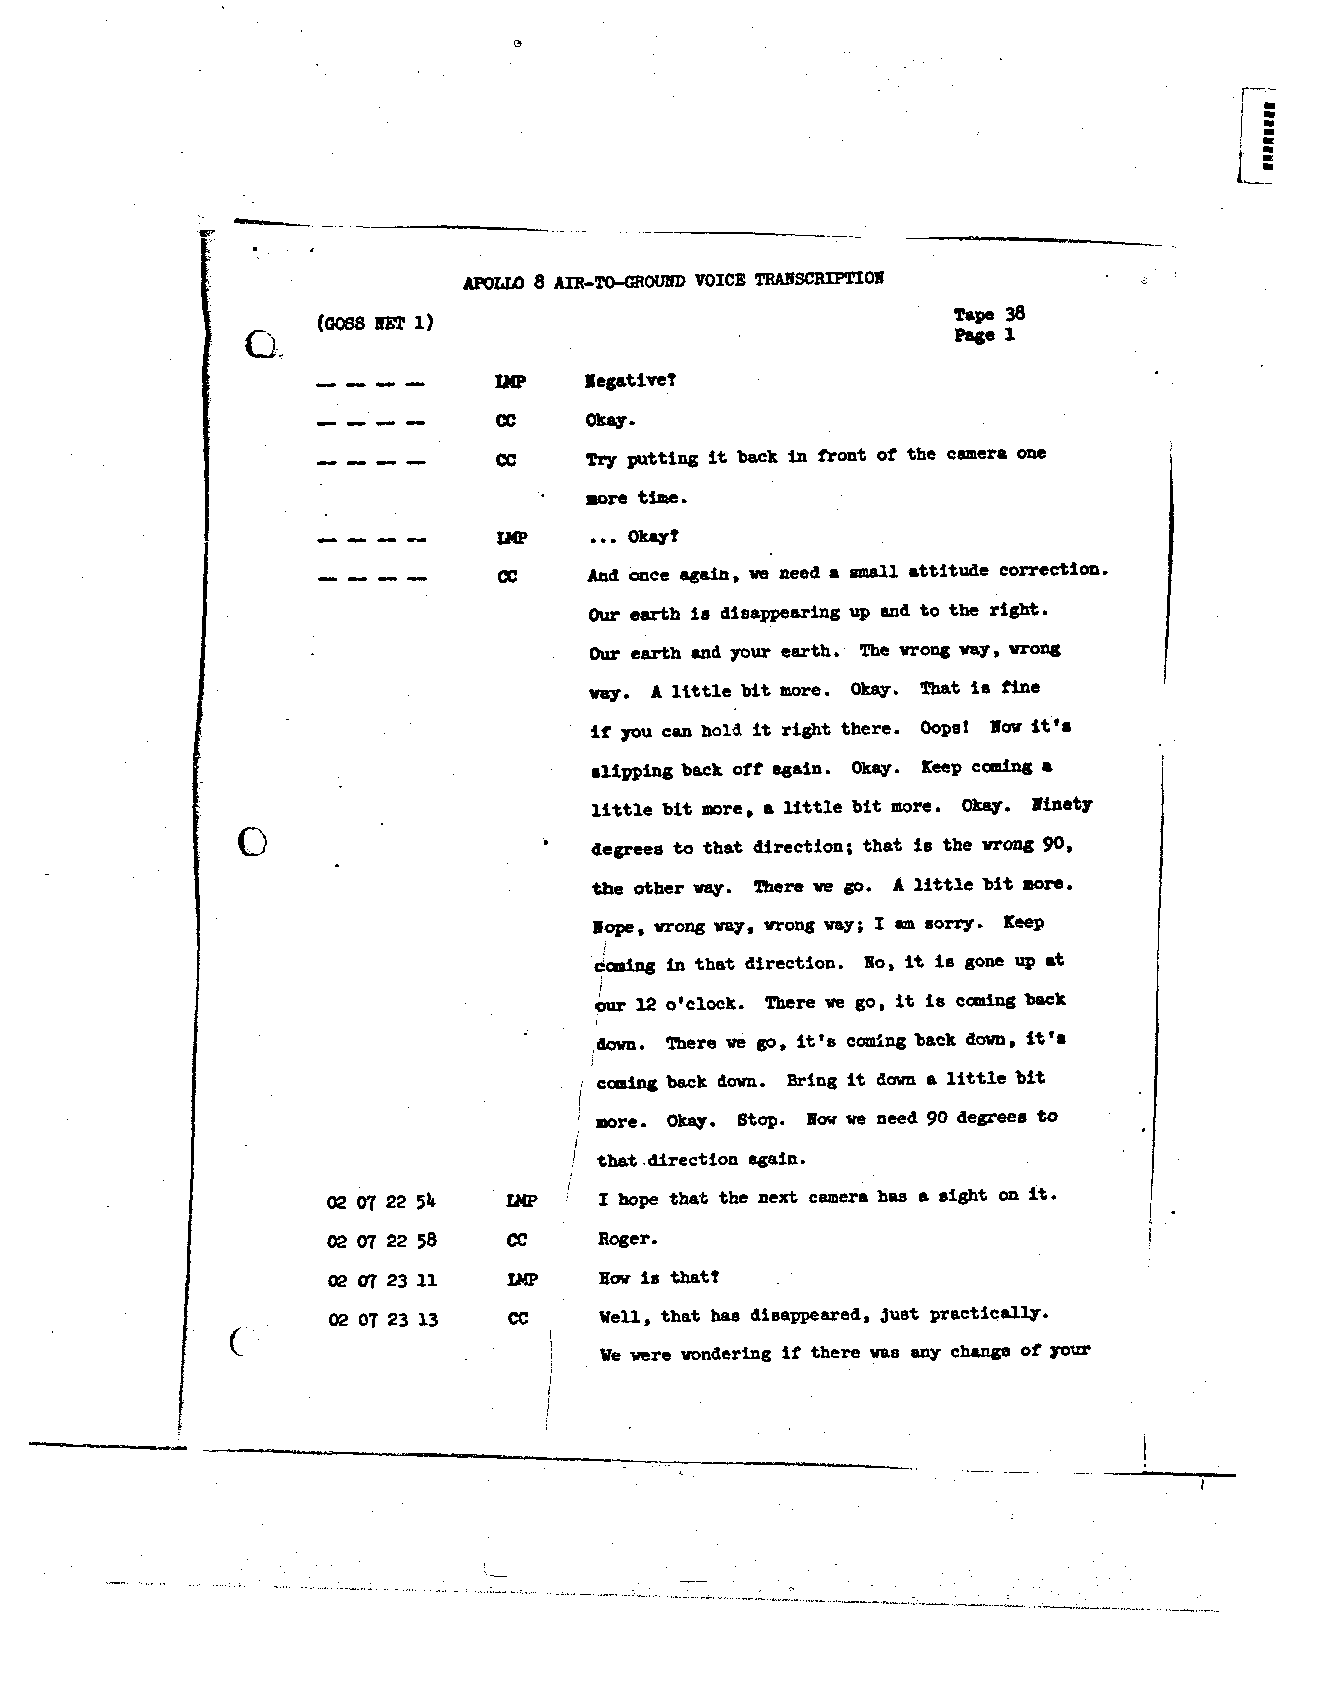 Page 295 of Apollo 8’s original transcript